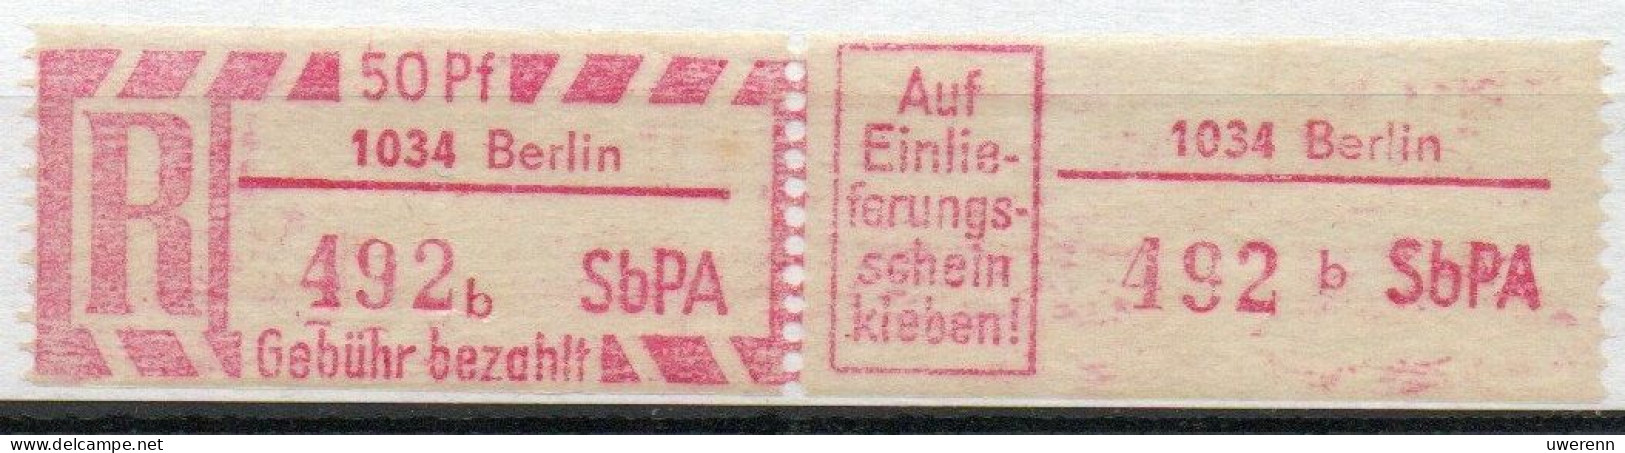 DDR Einschreibemarke Berlin SbPA Postfrisch, EM2B-1034bI Zh - R-Zettel